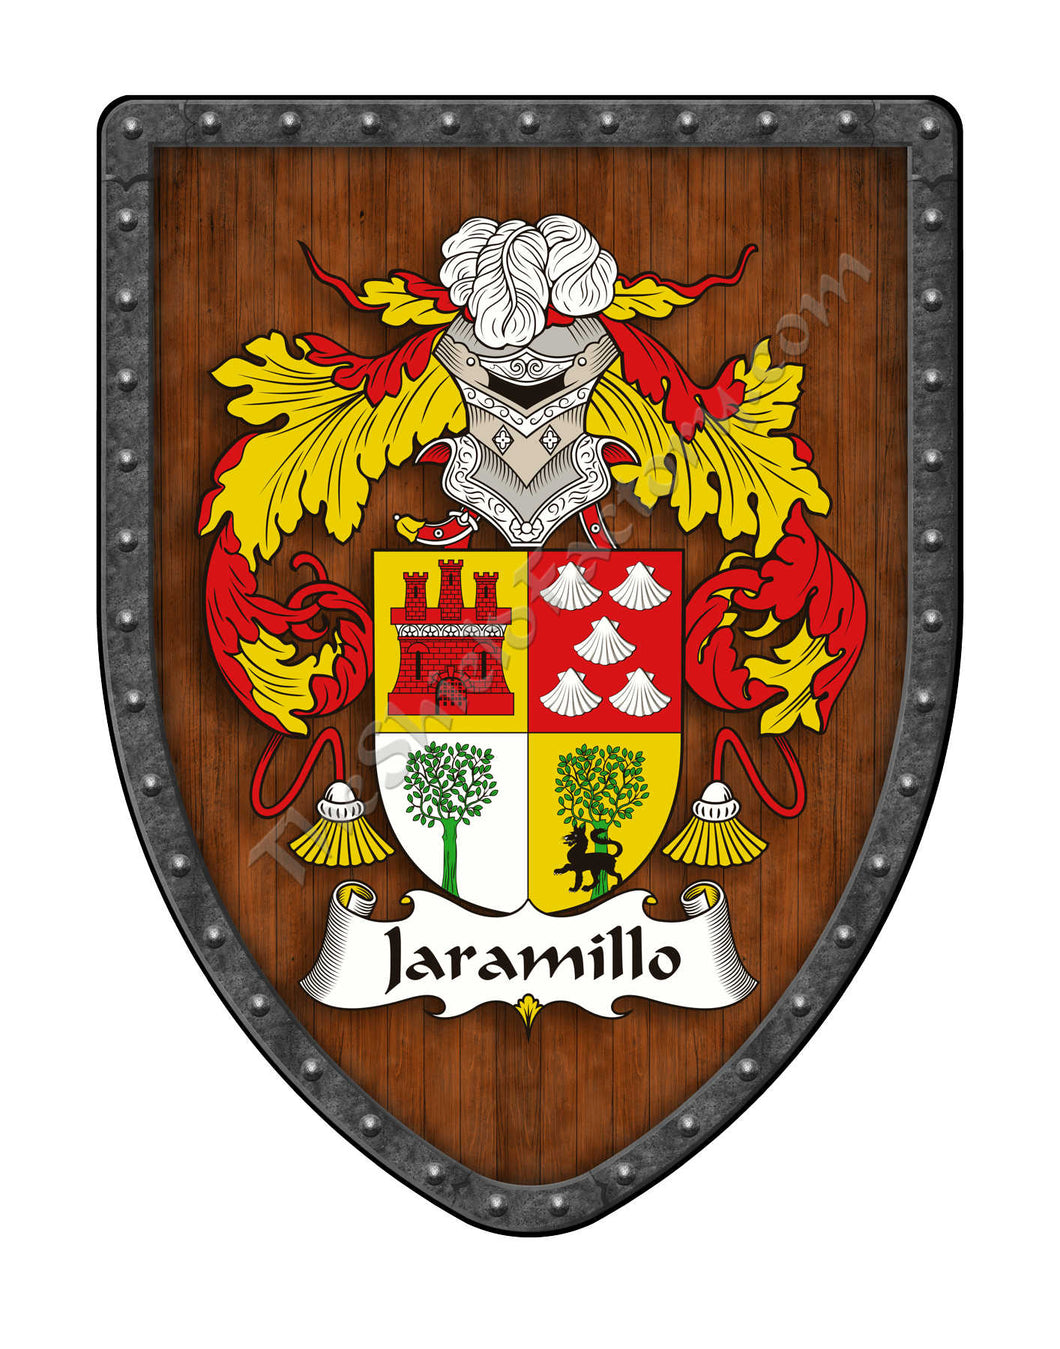 Jaramillo